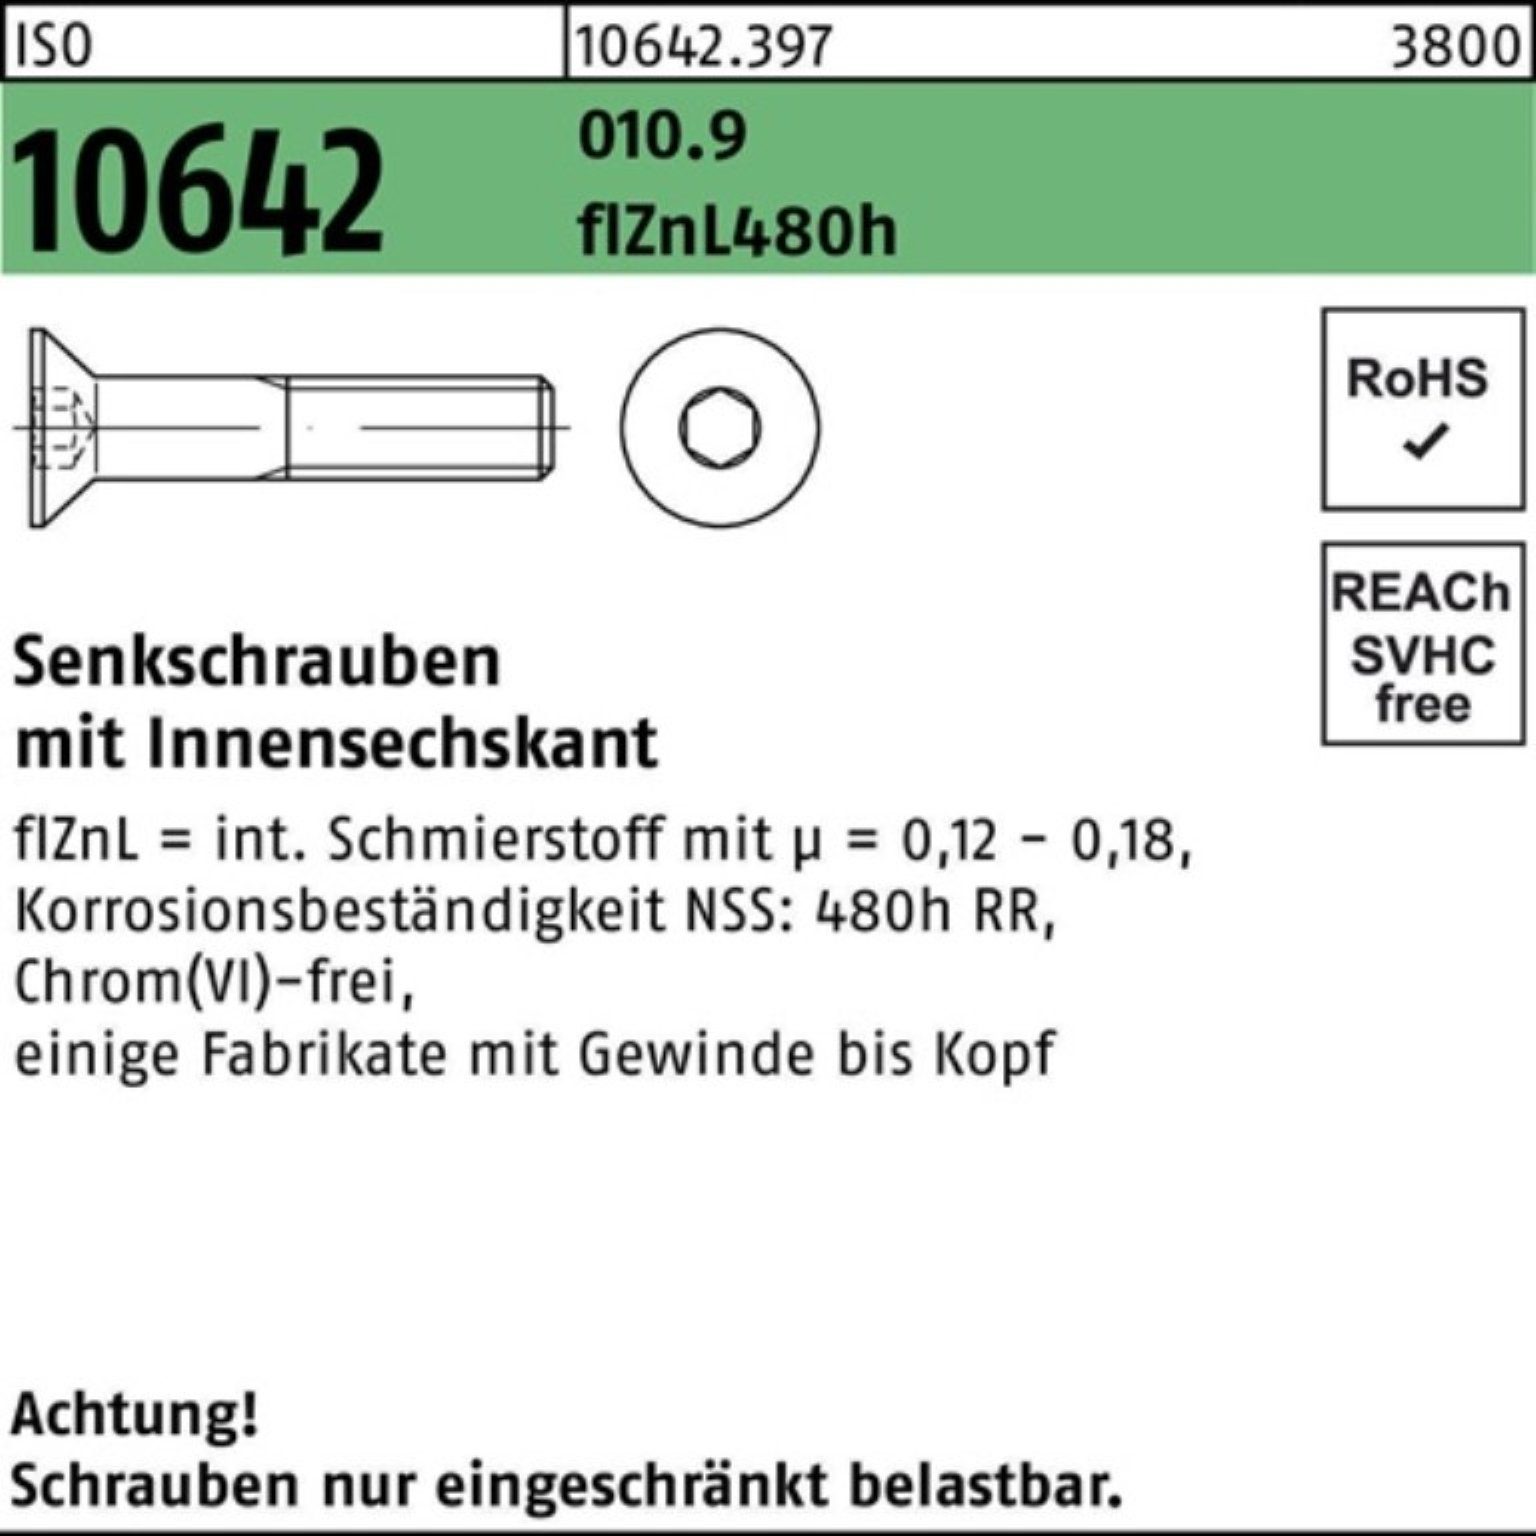 Reyher Senkschraube 100er Pack Senkschraube ISO 10642 Innen-6kt M16x60 010.9 flZnL 480h zi